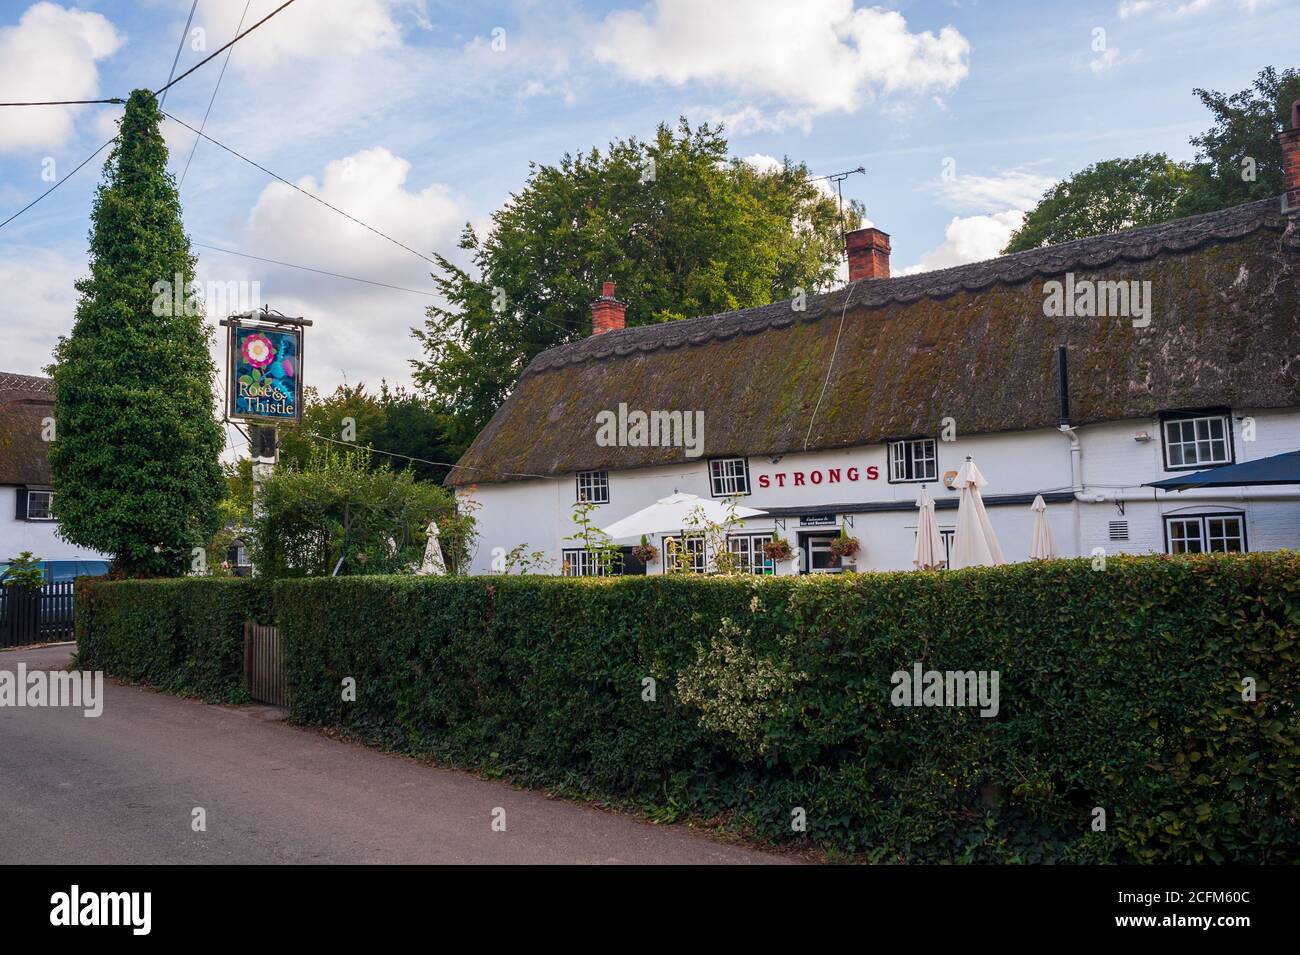 Pub Rose and Thistle dans le village rural de Rockbourne, Hampshire, Royaume-Uni Banque D'Images